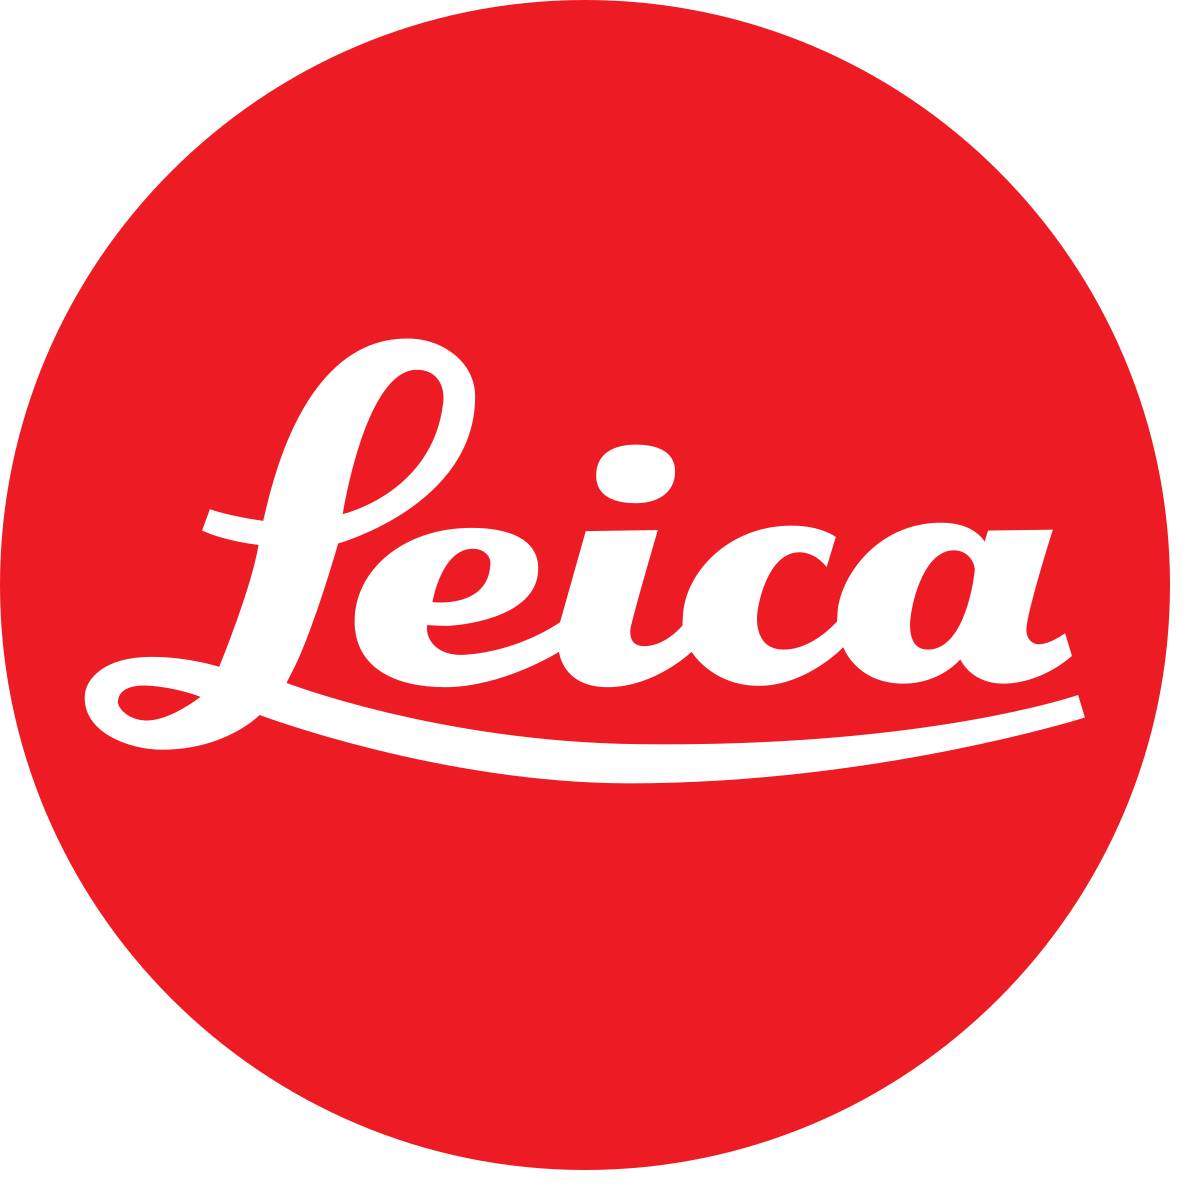 Camera Brand Logo - Leica Camera